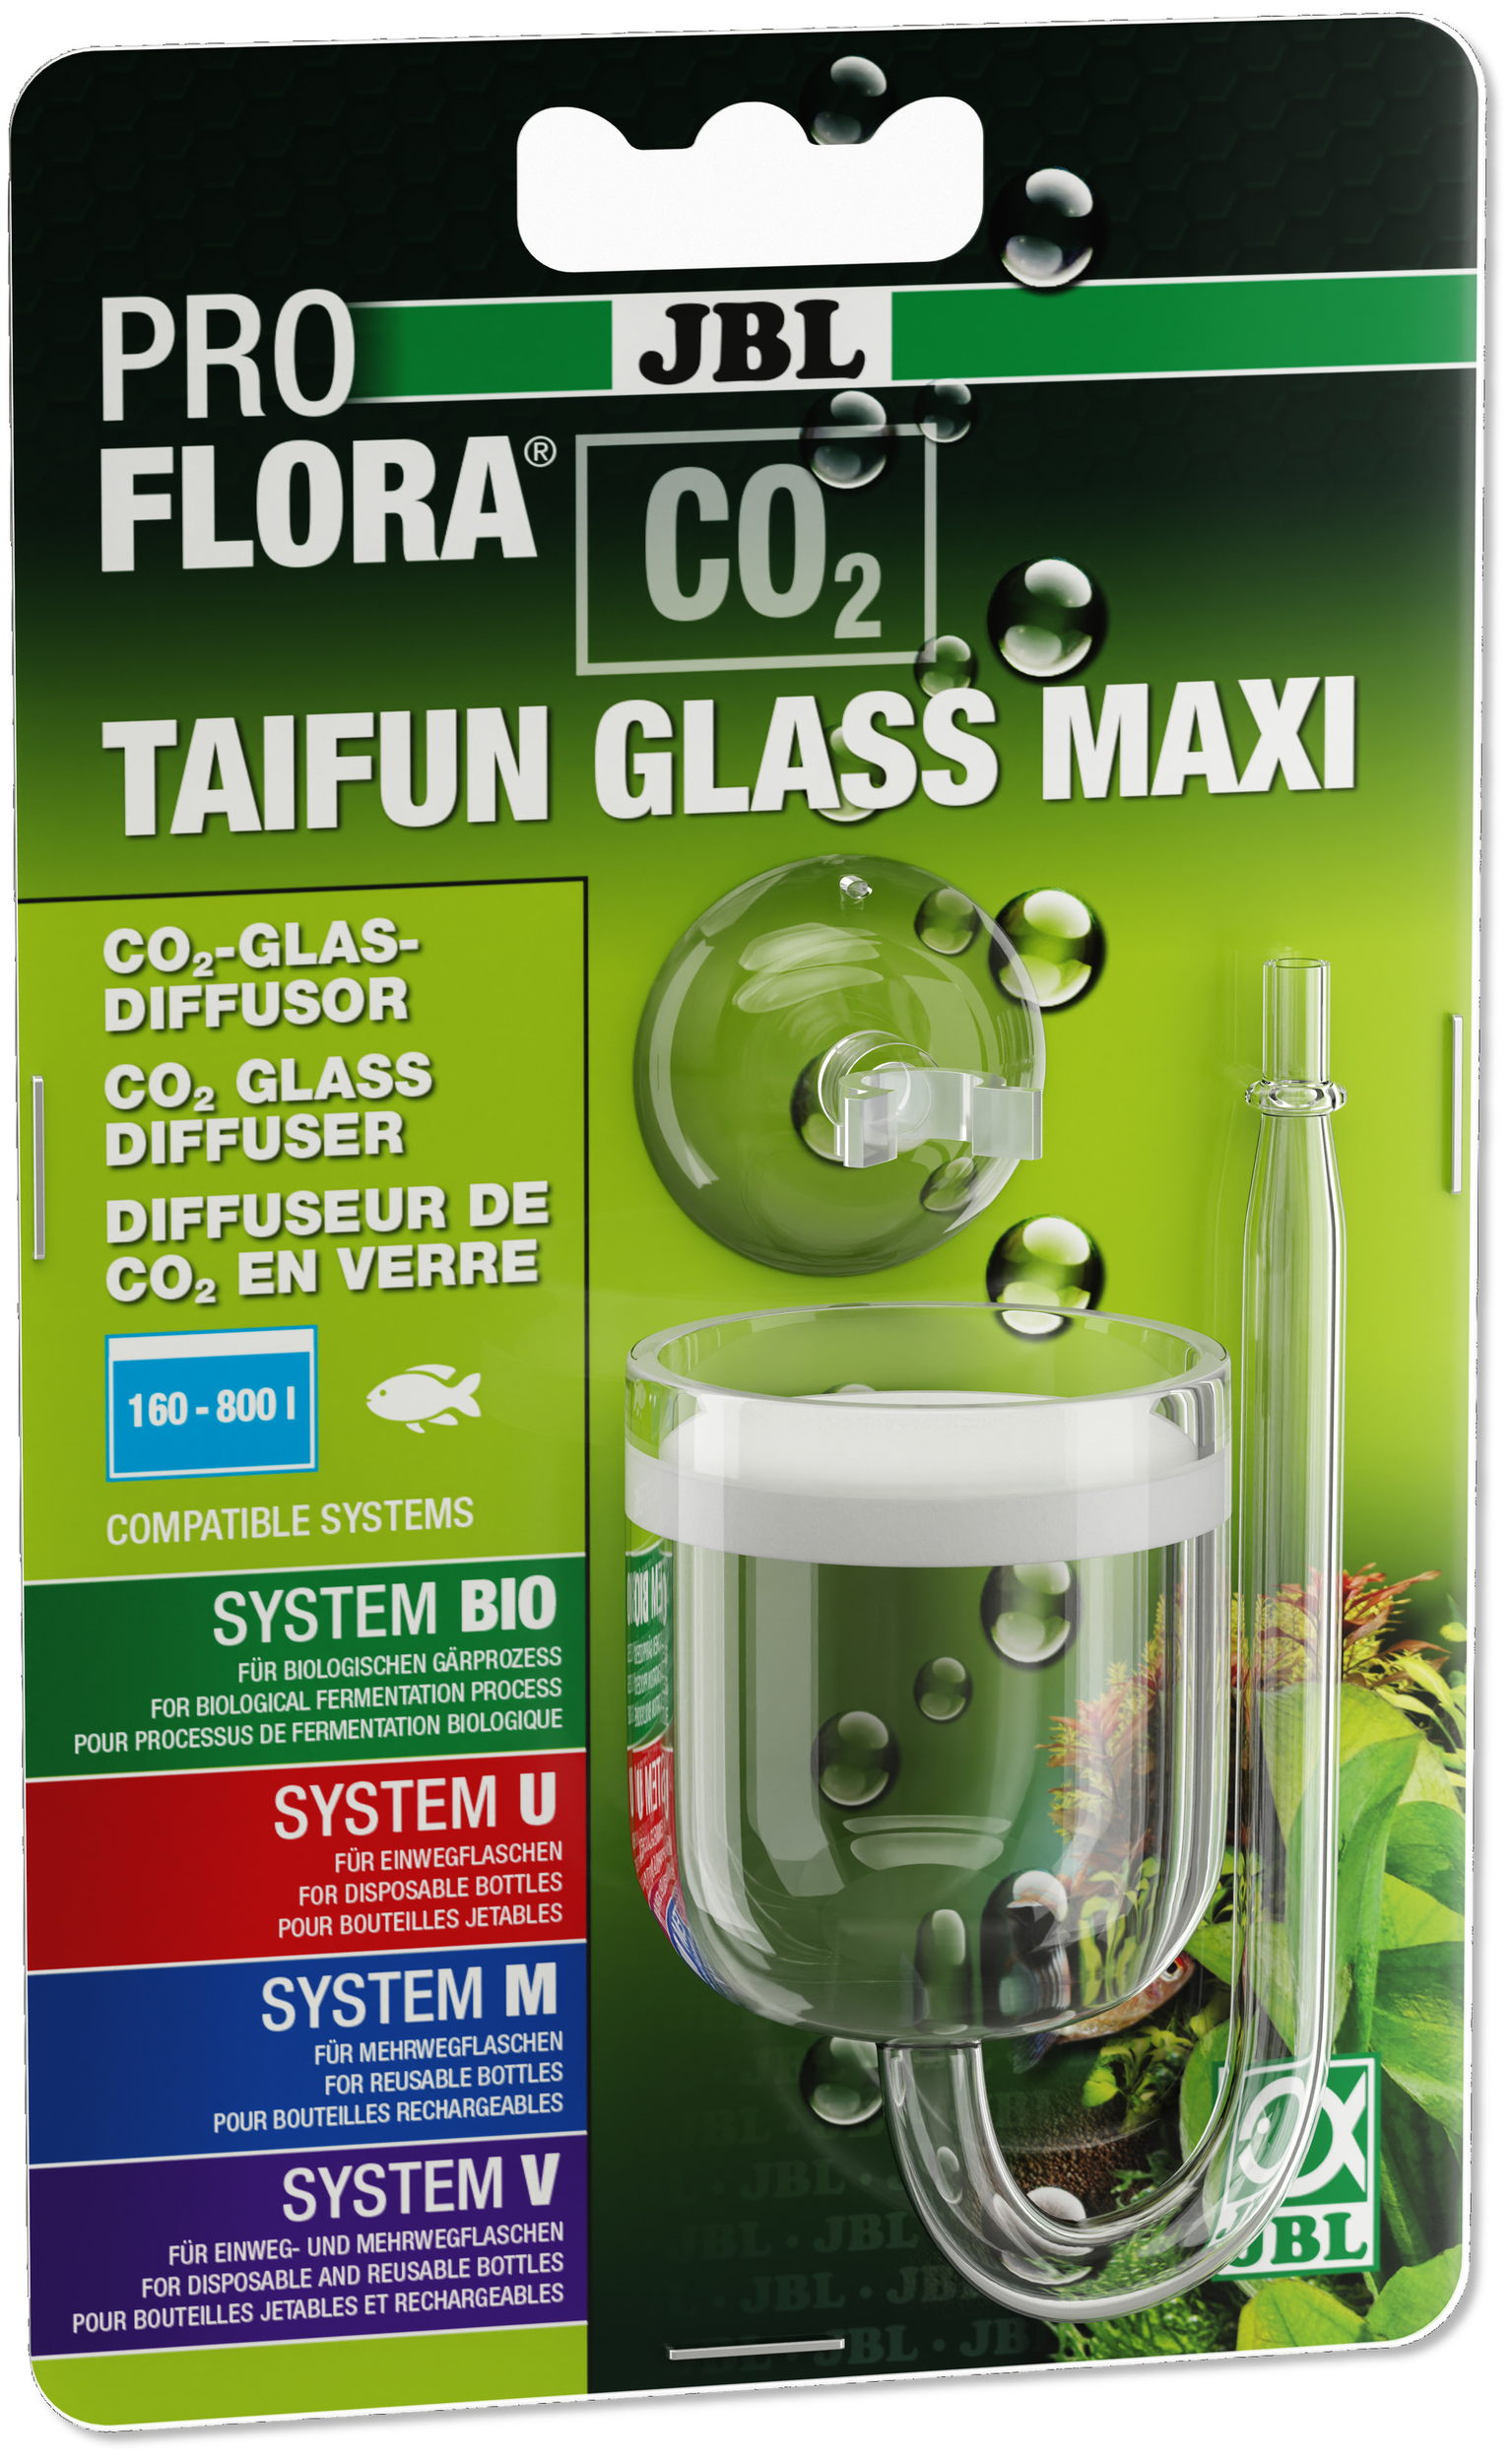 JBL Proflora CO2 Taifun Glass Maxi mini-diffuseur de CO2 haute perfomance pour aquarium de 40 à 800 L